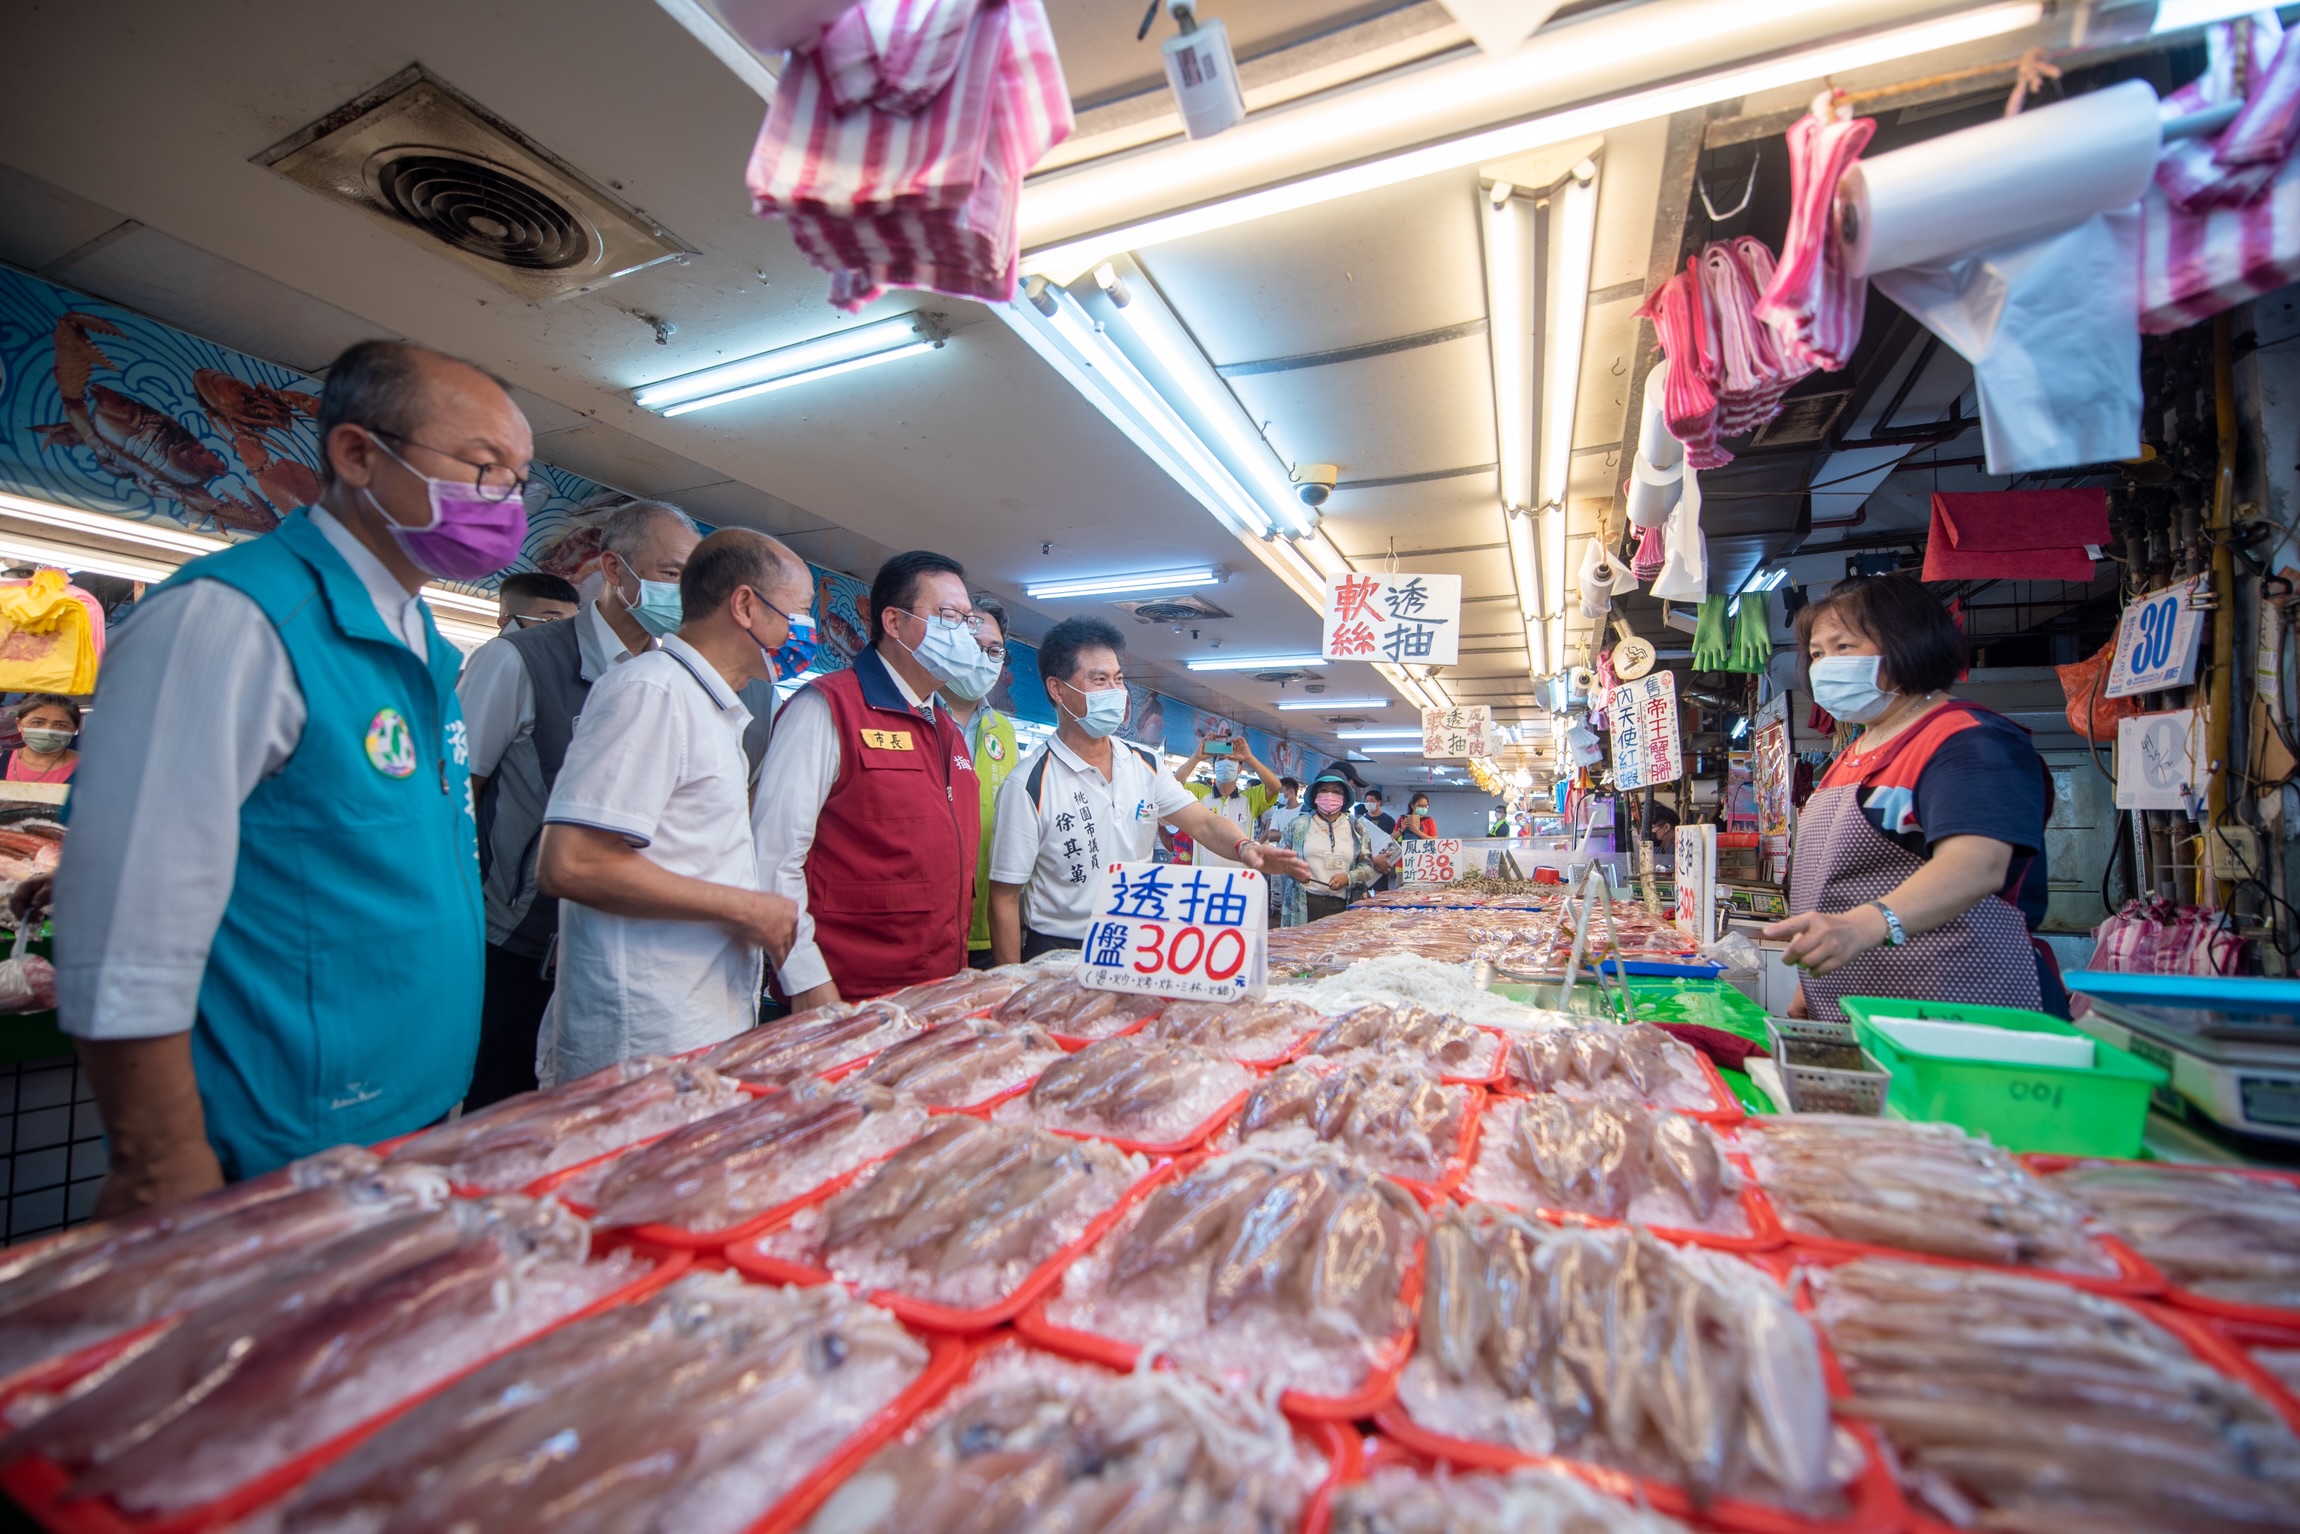 鄭市長視察竹圍漁港防疫作為 落實人流減量管制、不集客